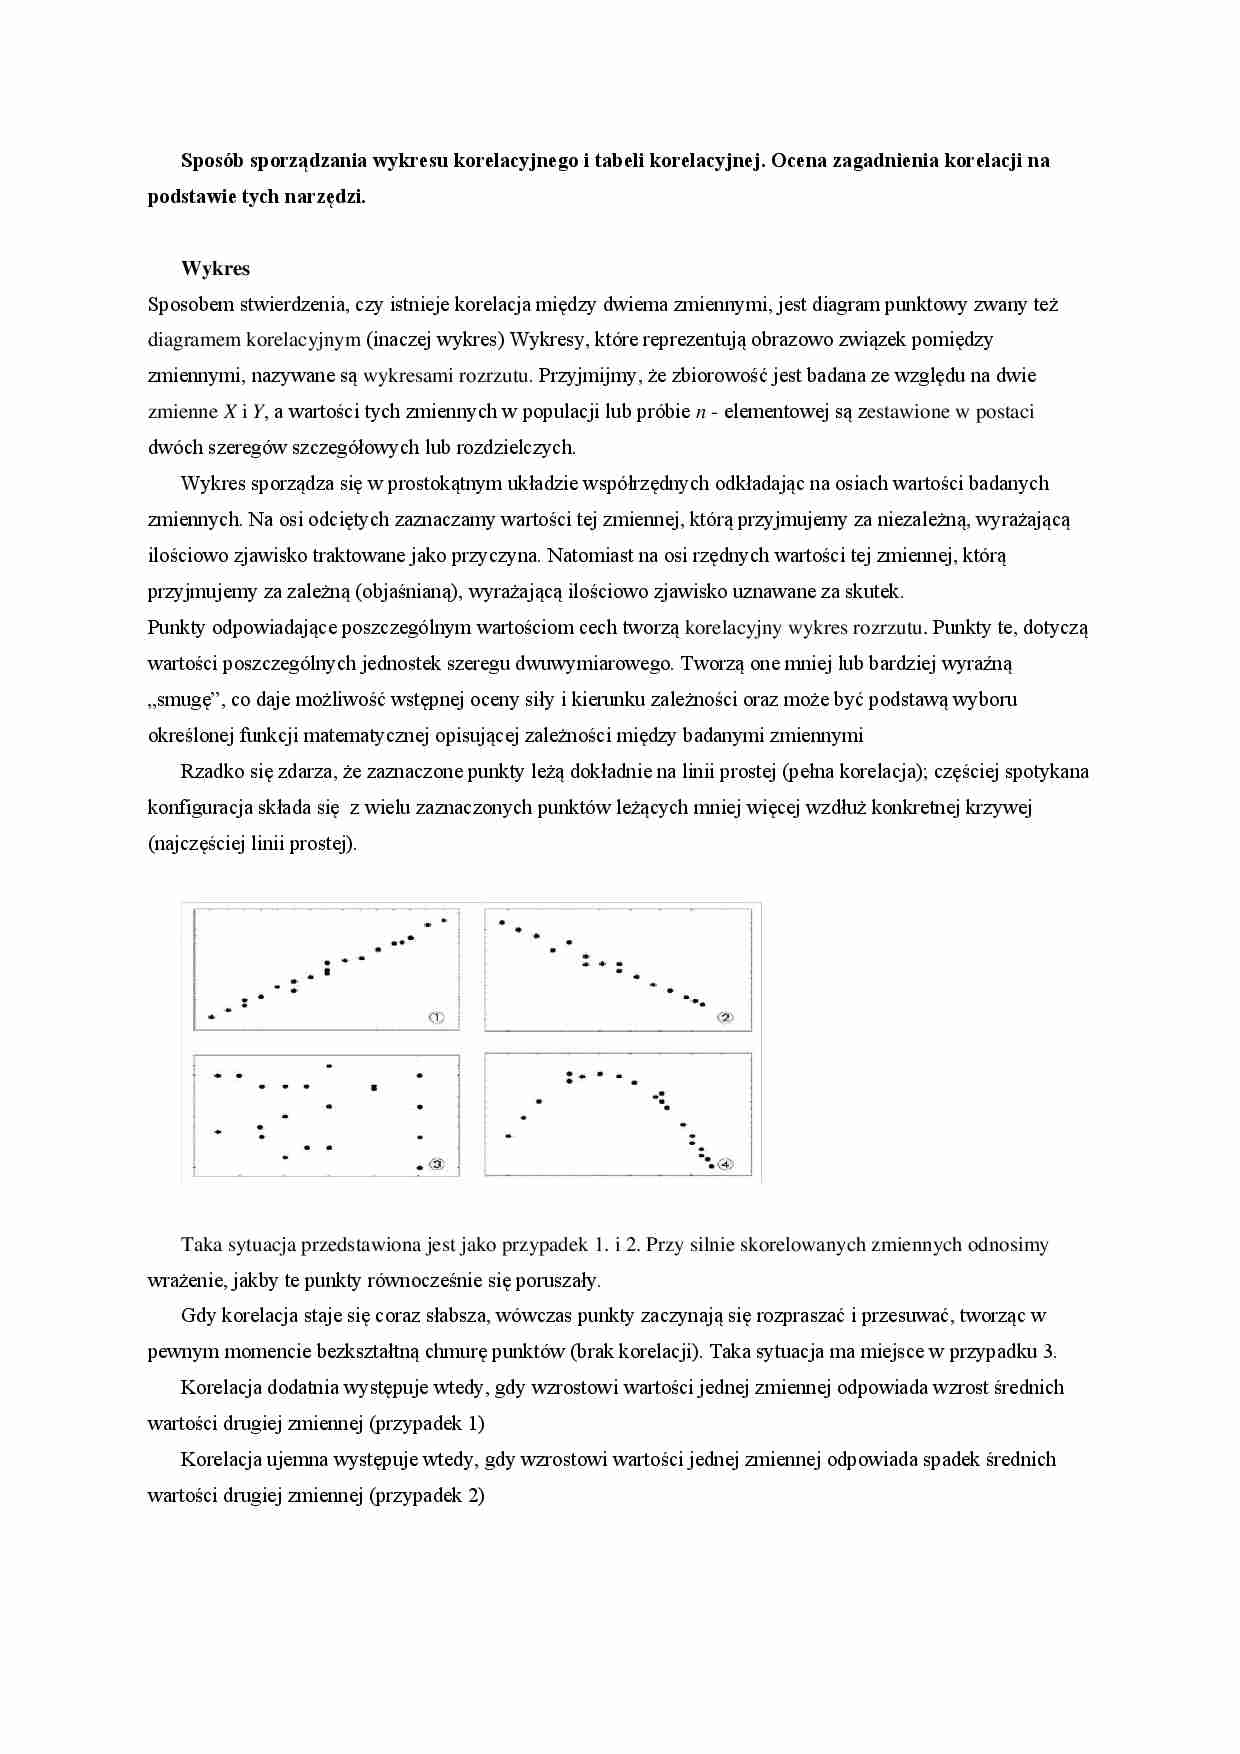 Sposób sporządzania wykresu korelacyjnego i tabeli - strona 1